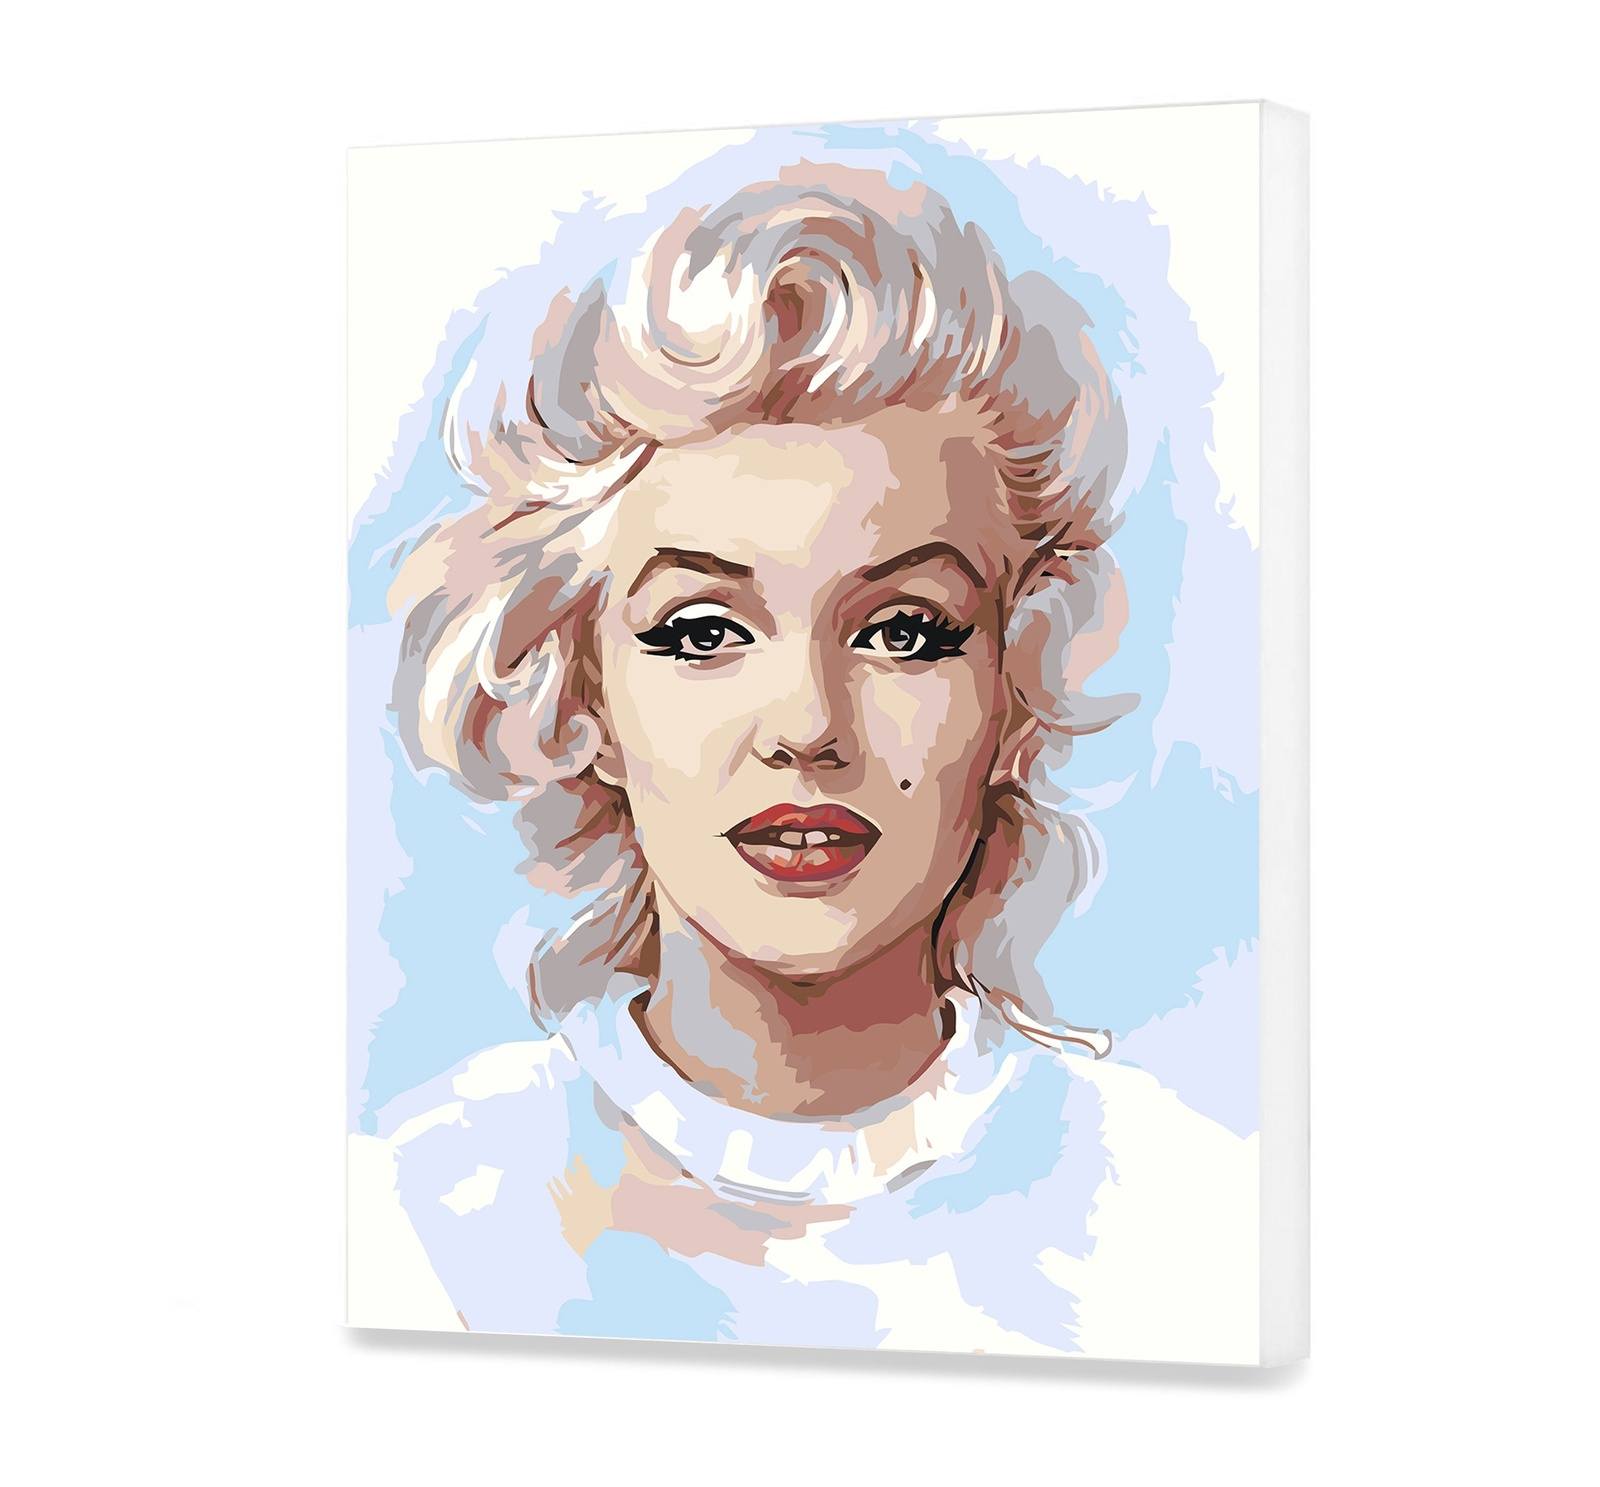 Malování podle čísel Marilyn Monroe